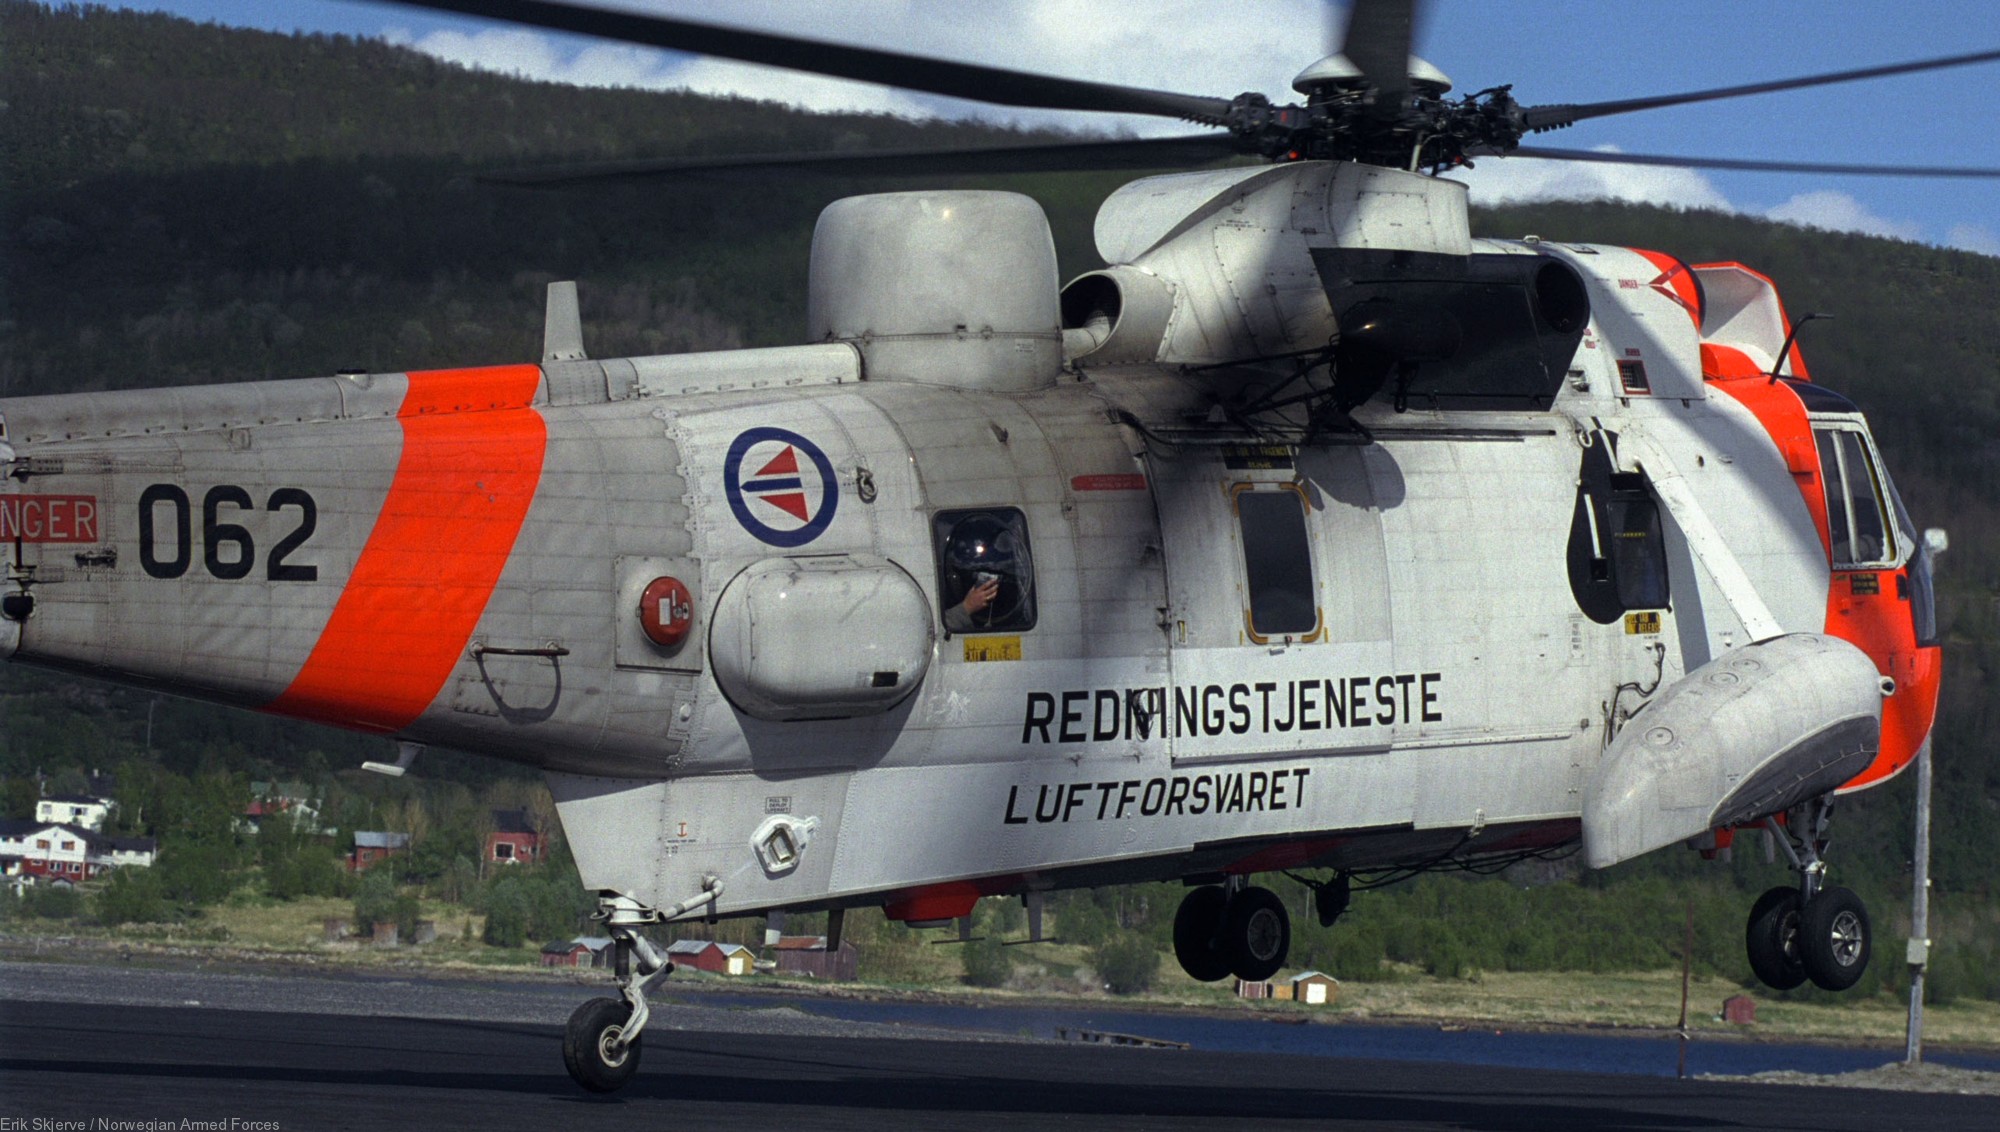 westland ws-61 sea king royal norwegian air force sar rescue 330 squadron skvadron luftforsvaret 062 10